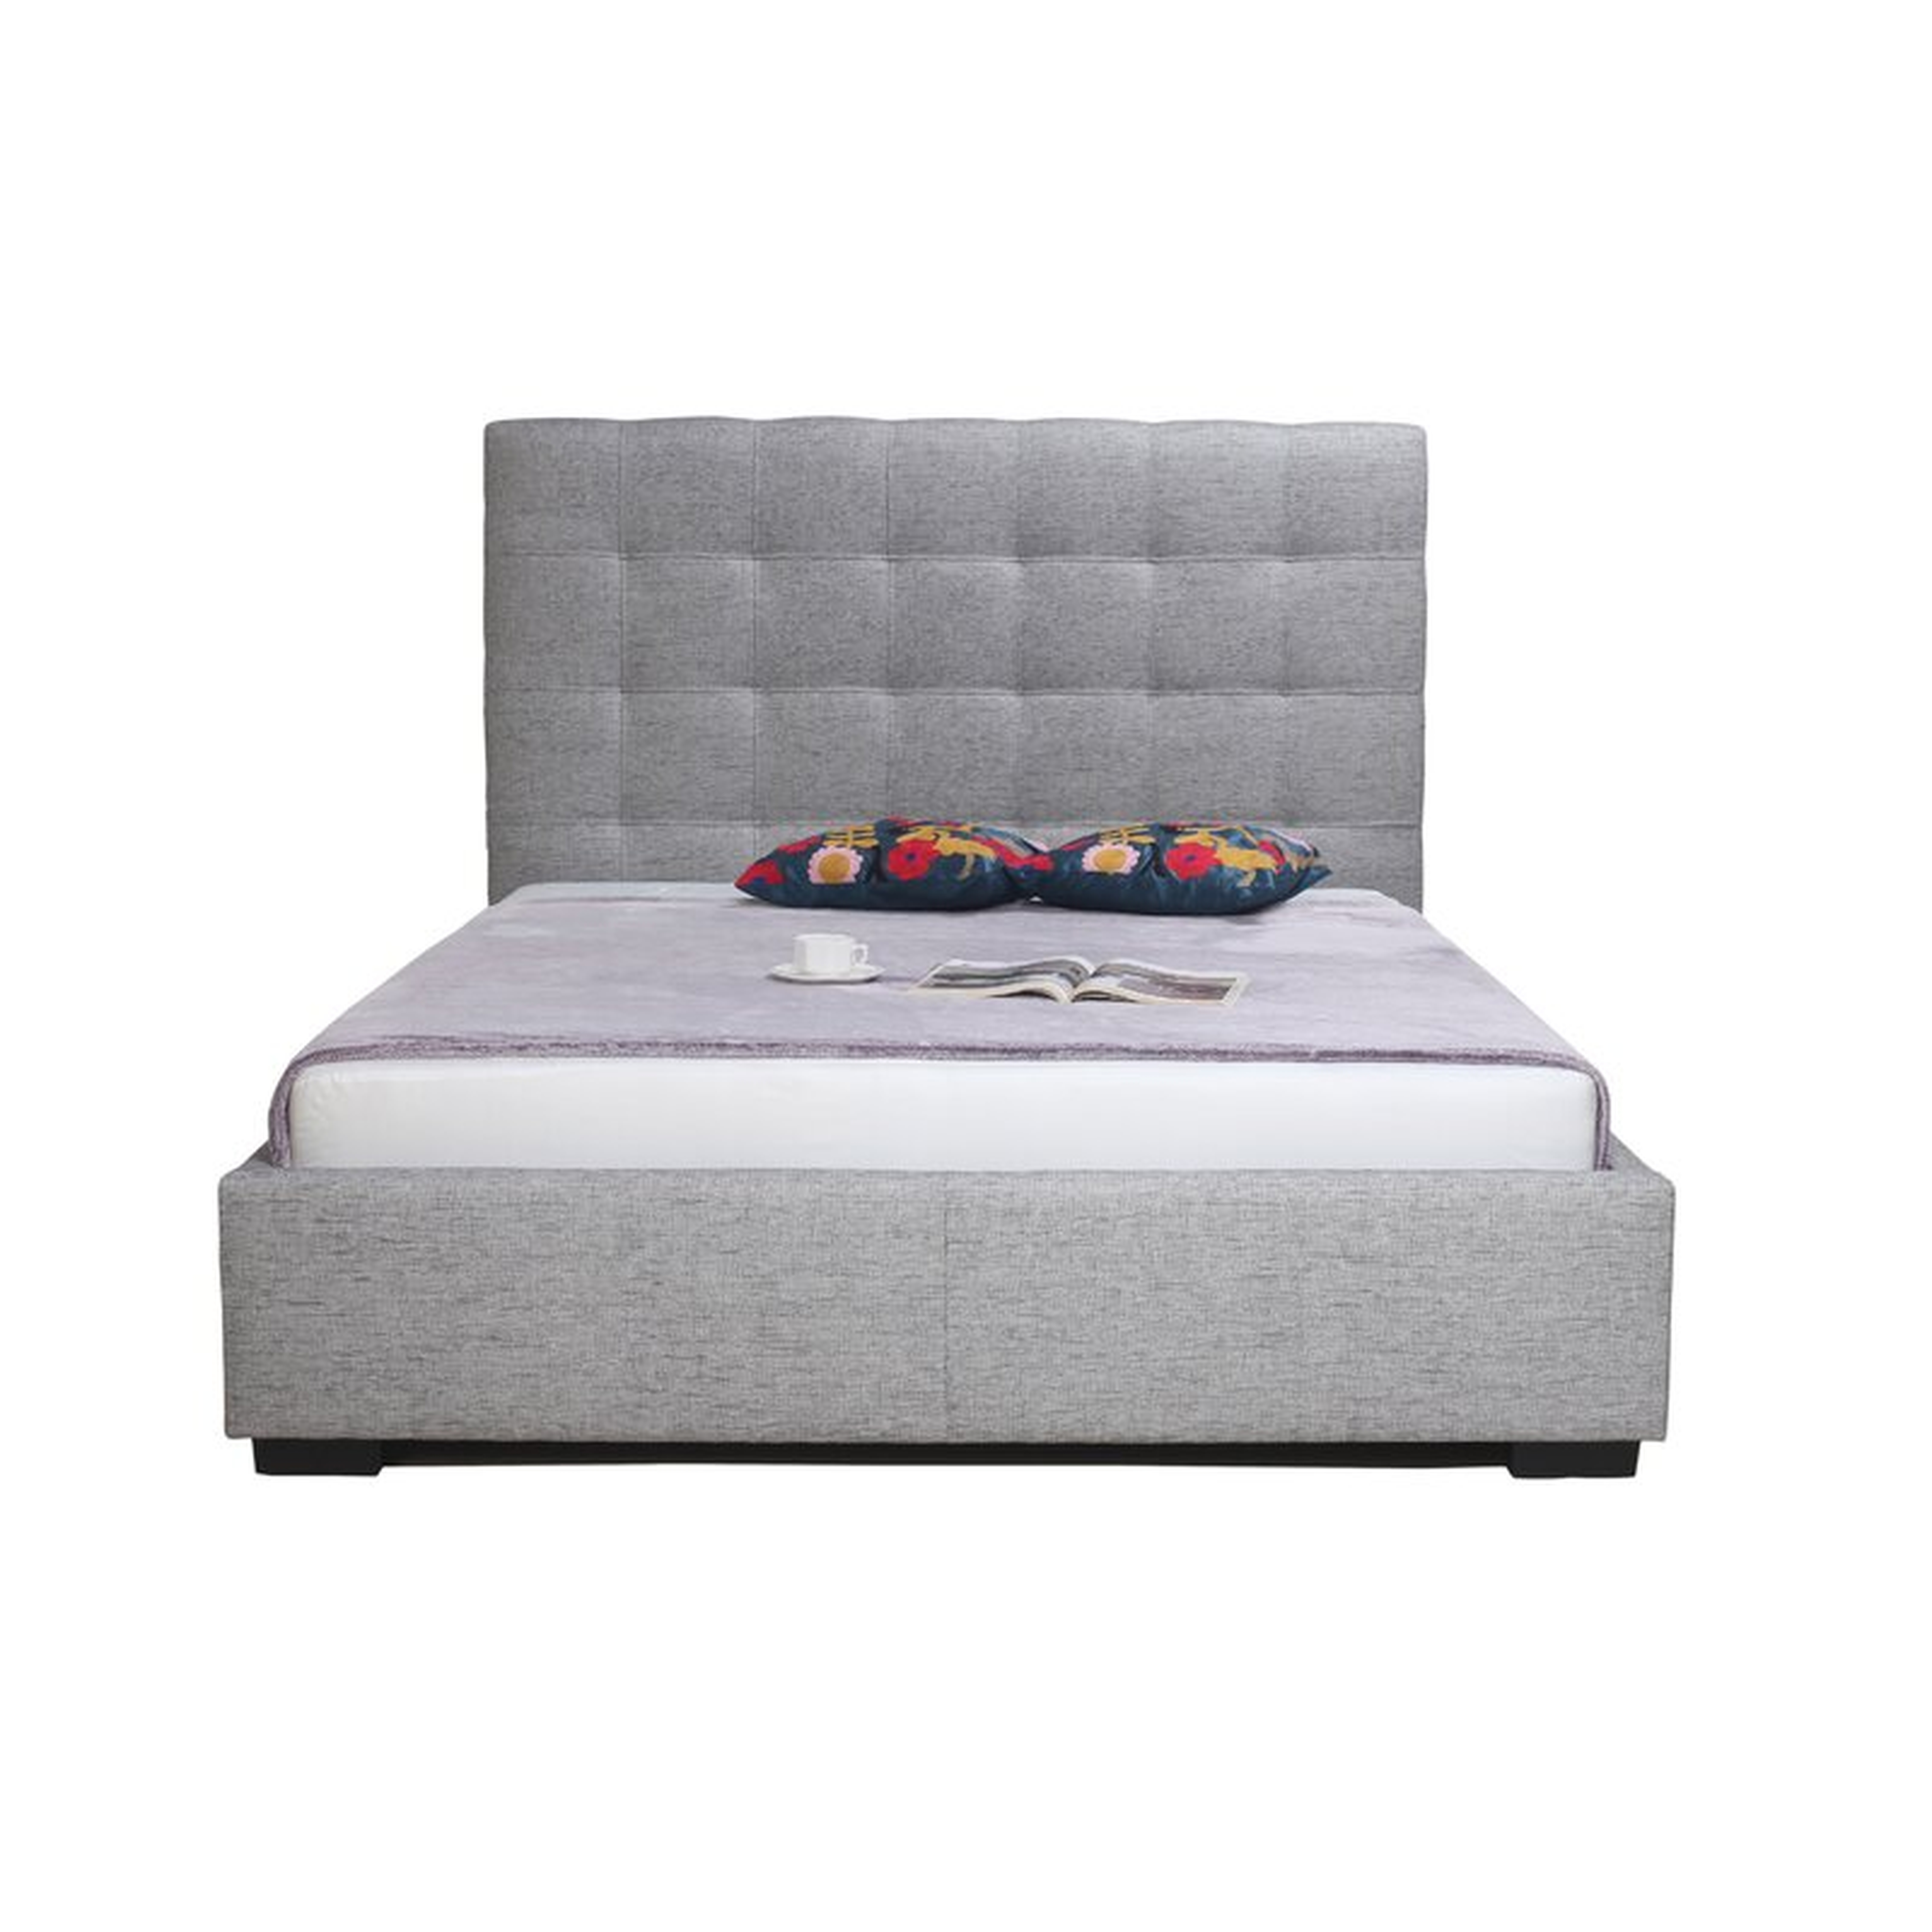 Moe's Home Collection Upholstered Storage Platform Bed Size: King, Color: Light Grey - Perigold